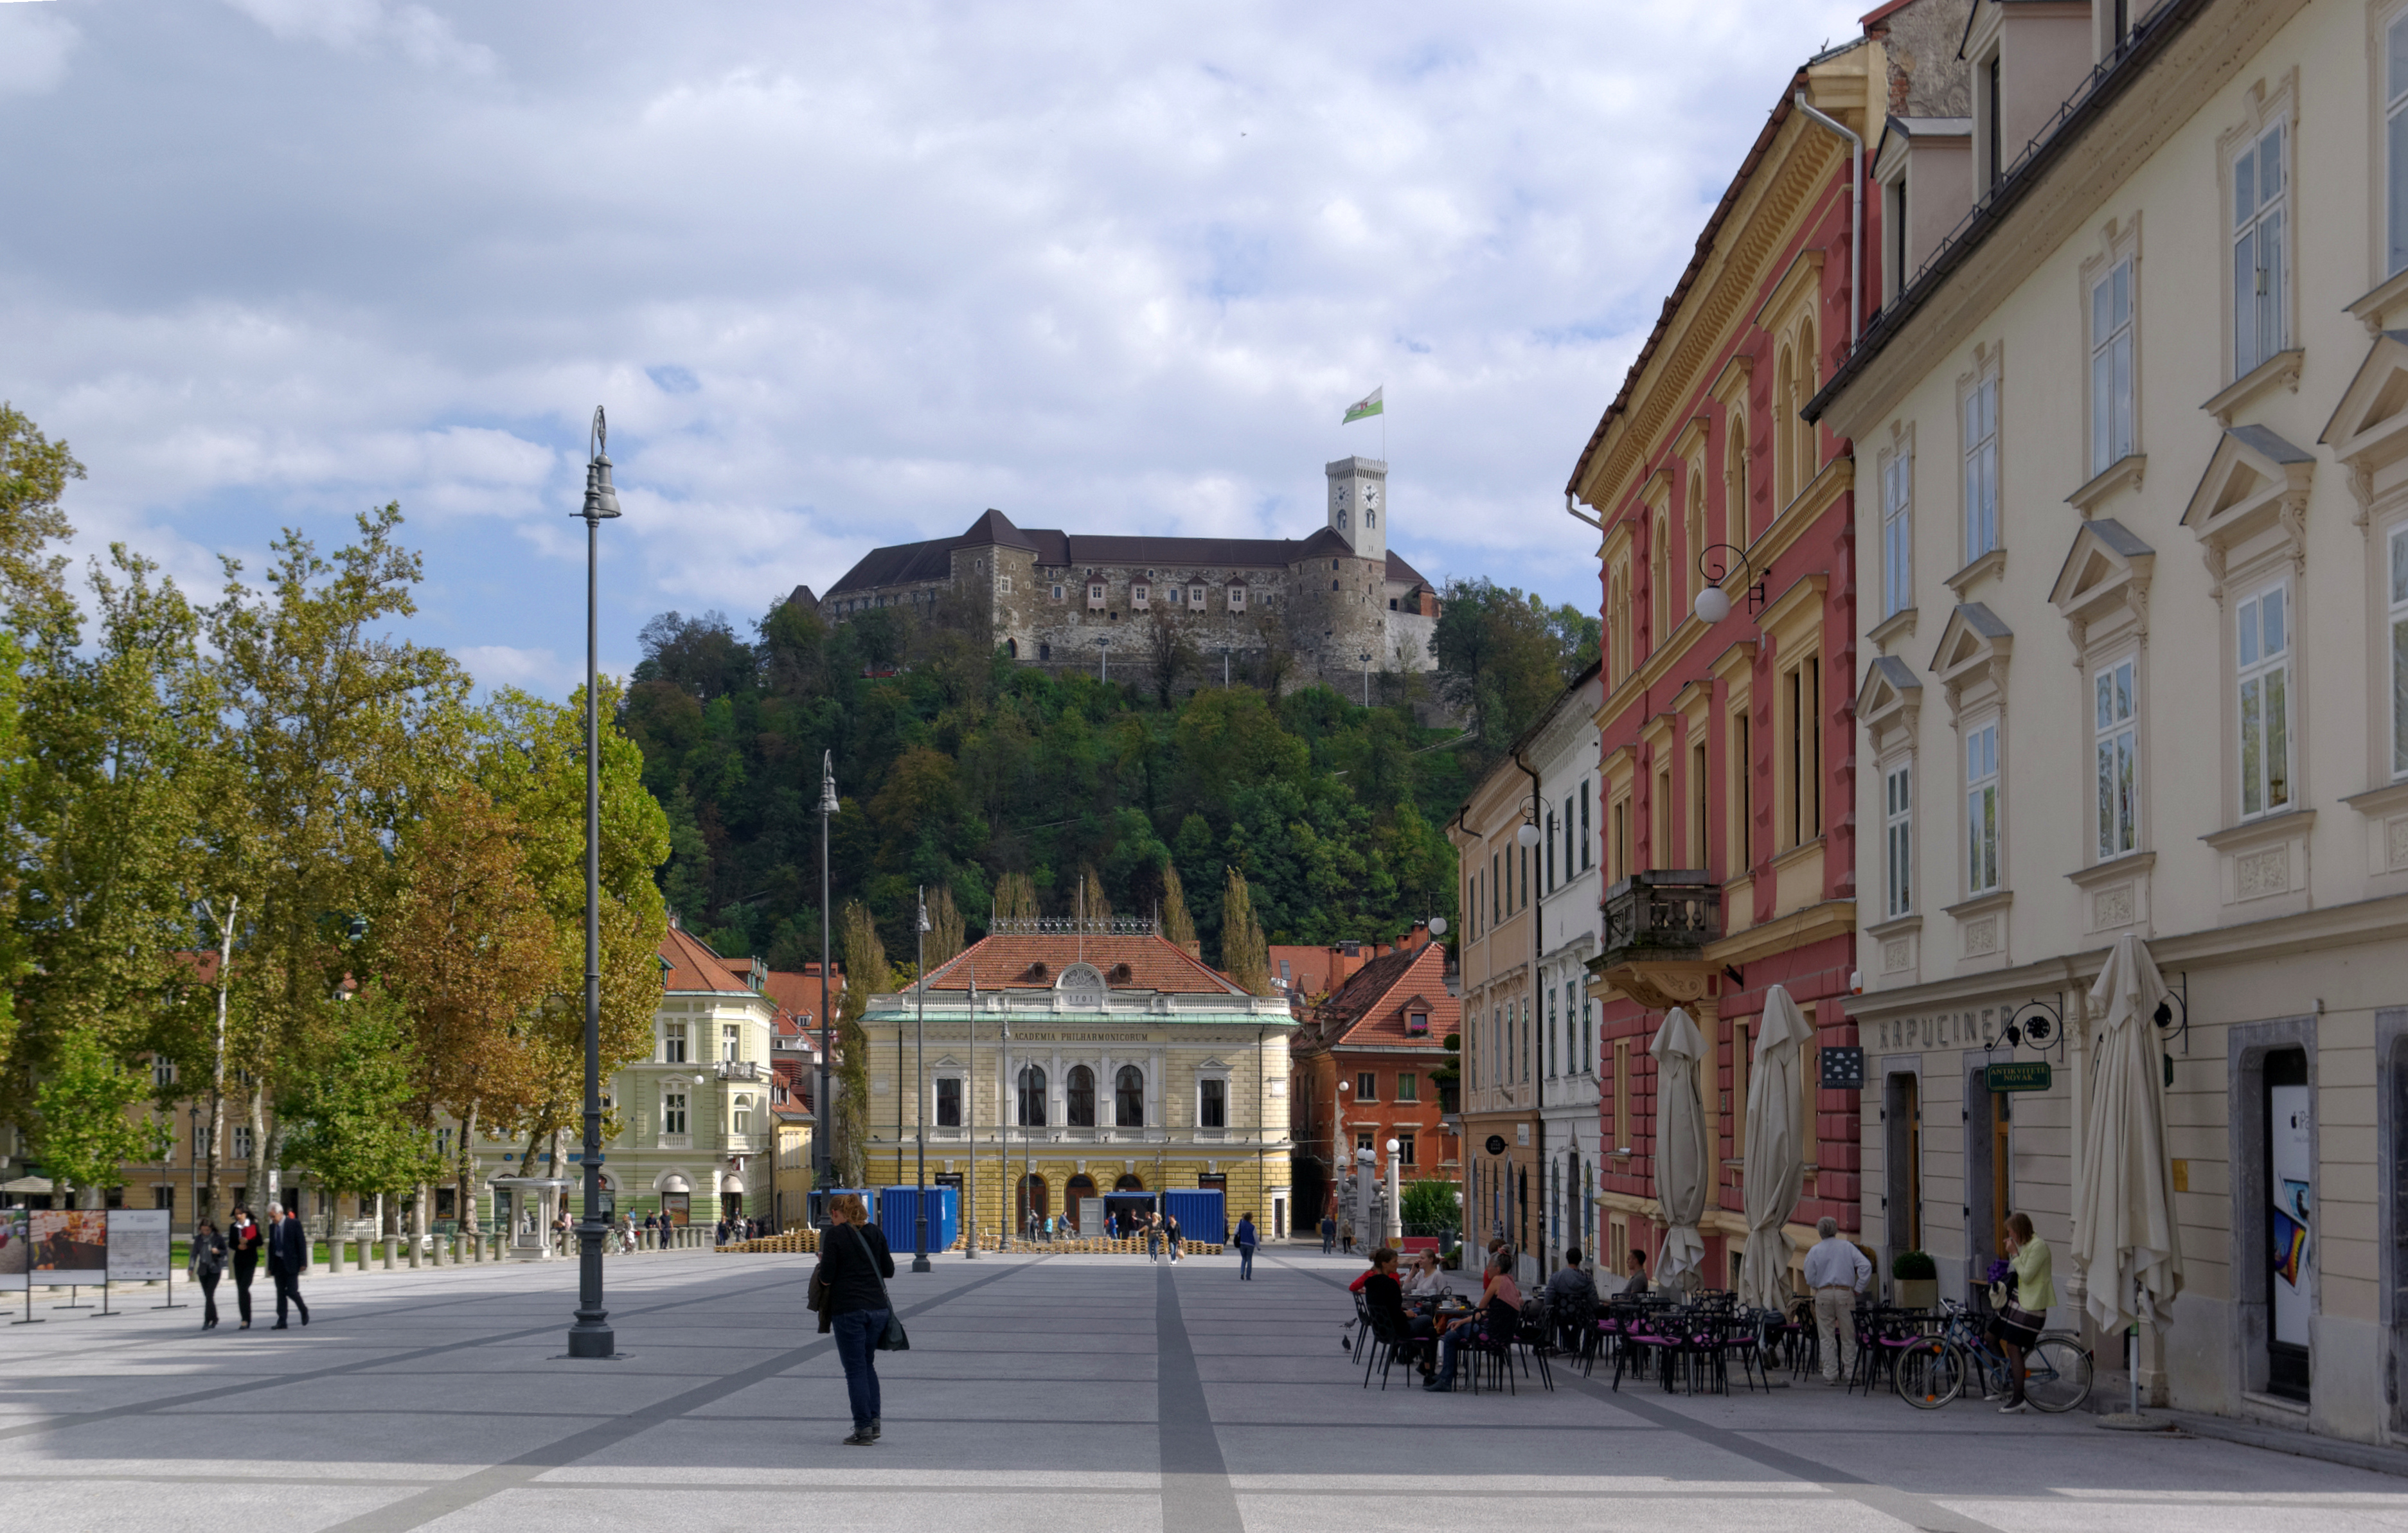 Ljubljana BW 2014-10-09 13-59-37 1